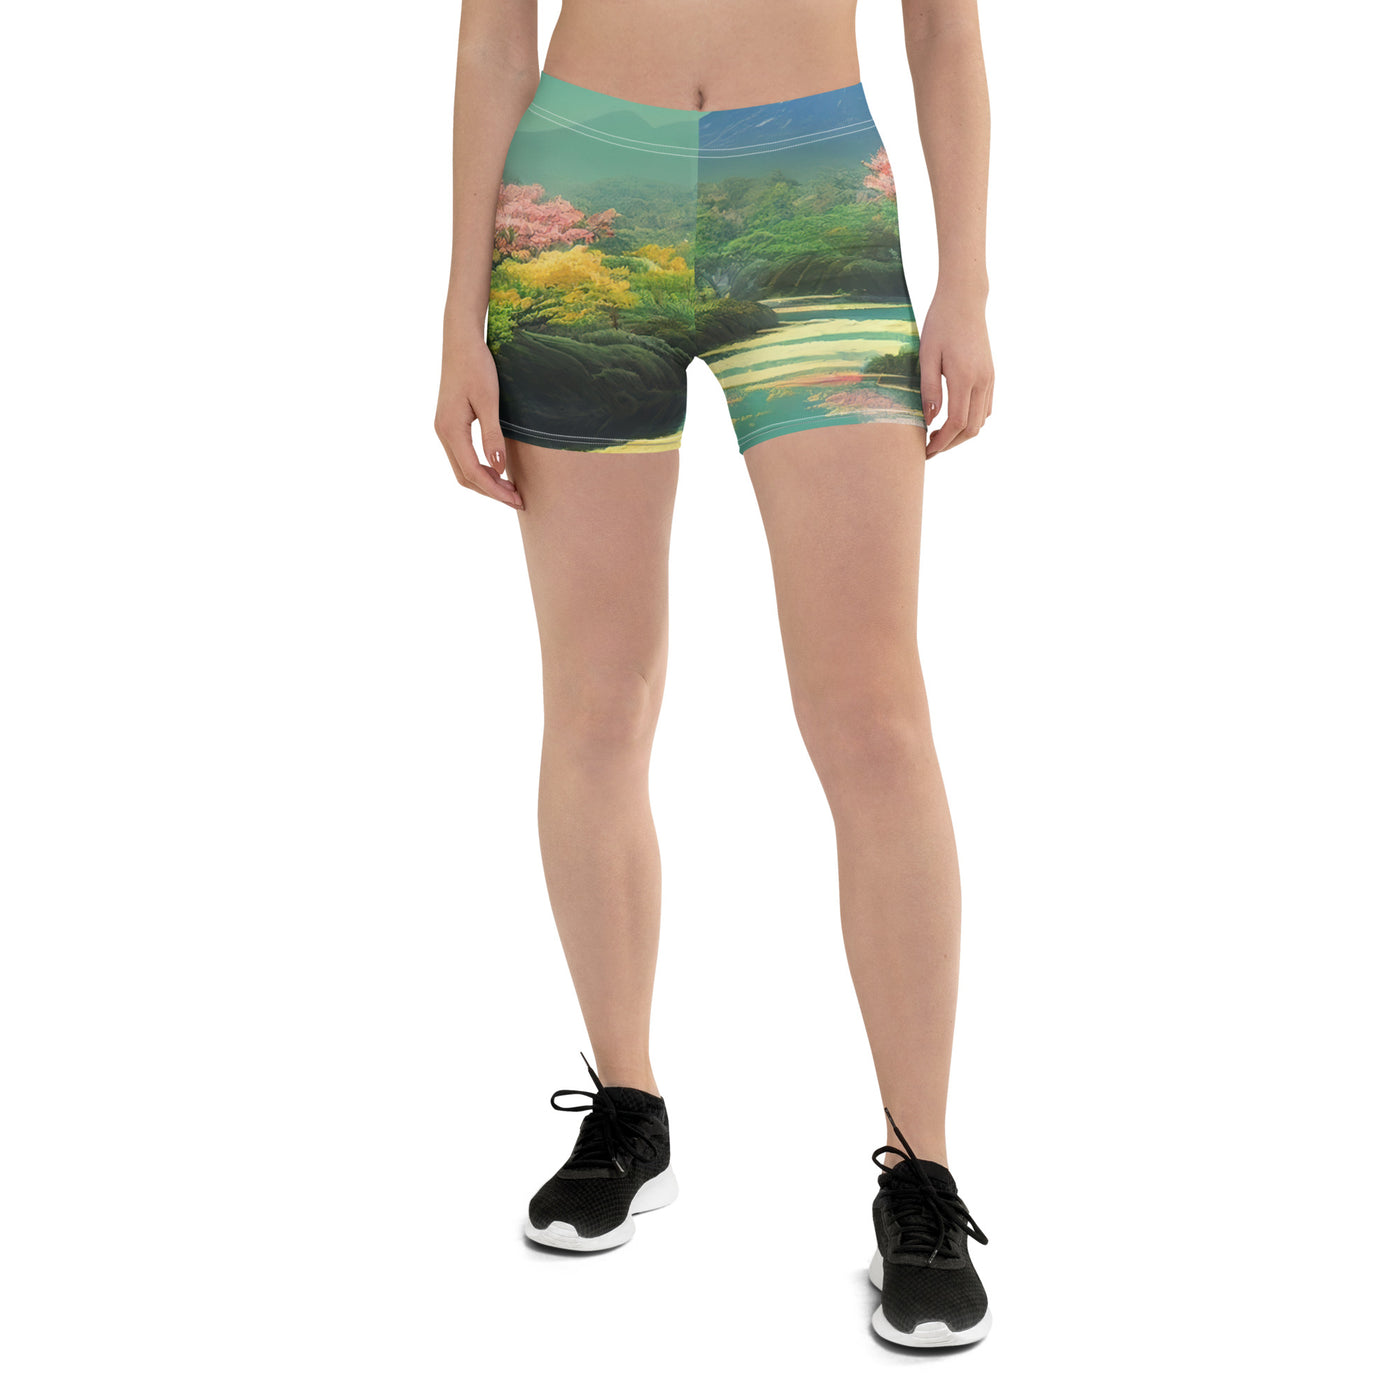 Berg, See und Wald mit pinken Bäumen - Landschaftsmalerei - Shorts (All-Over Print) berge xxx 3XL